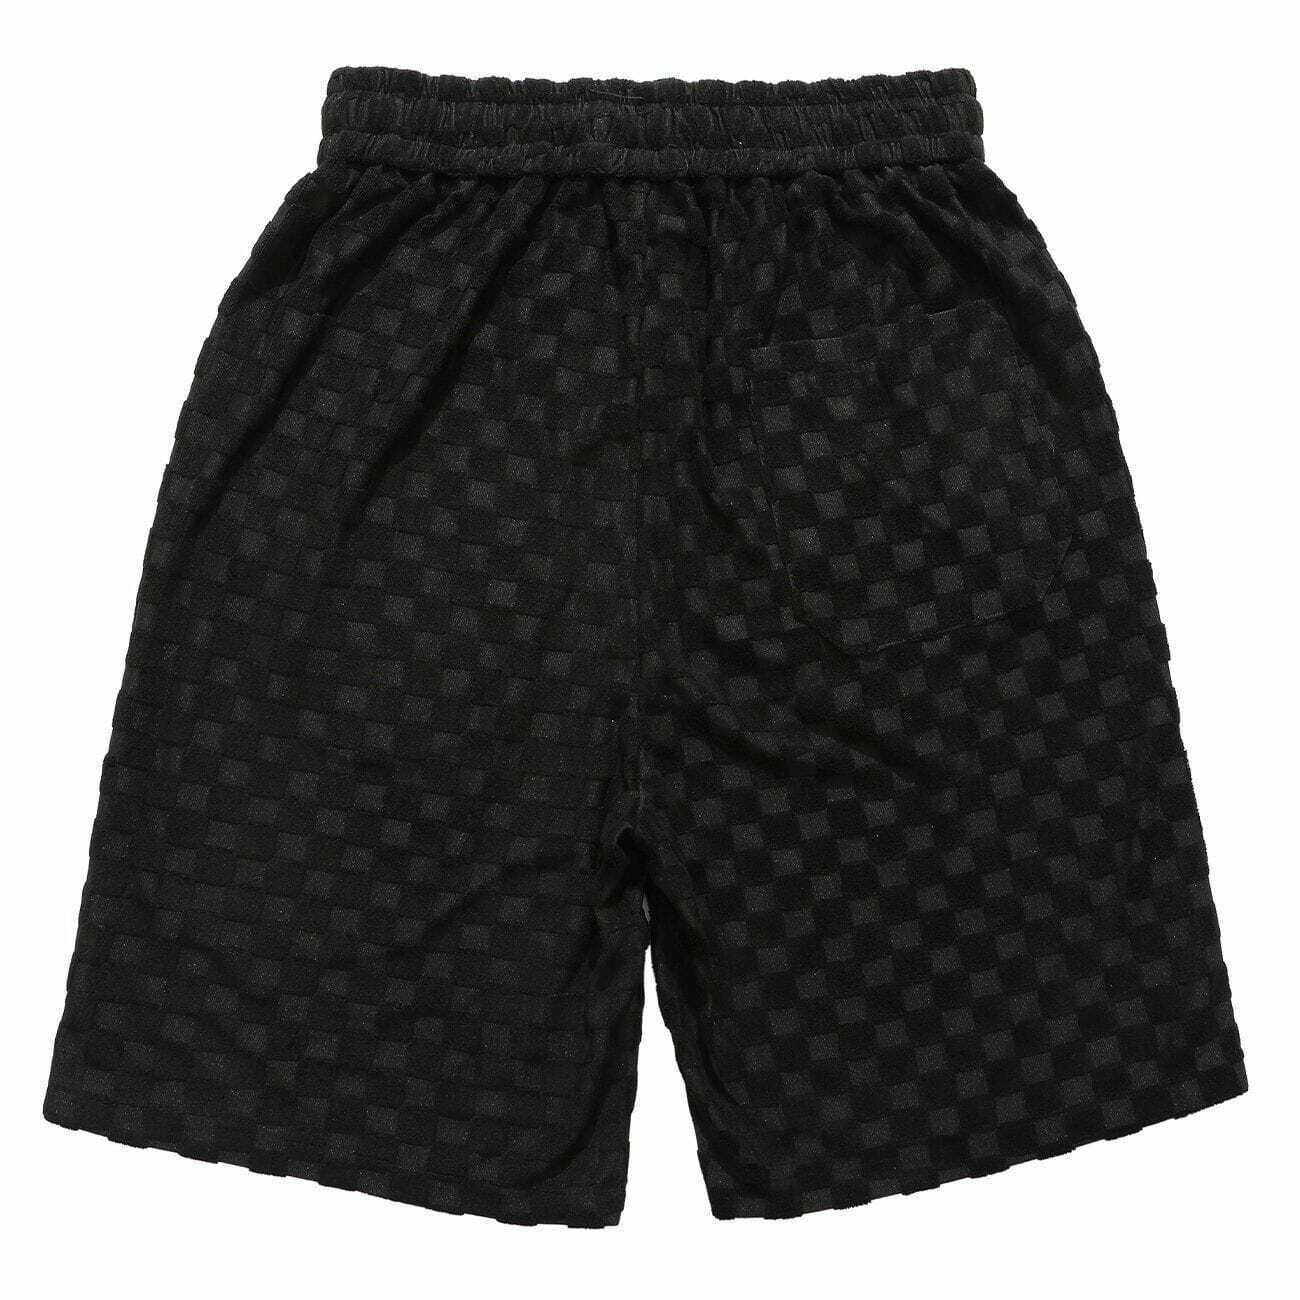 checkered drawstring shorts edgy & comfortable streetwear 7768